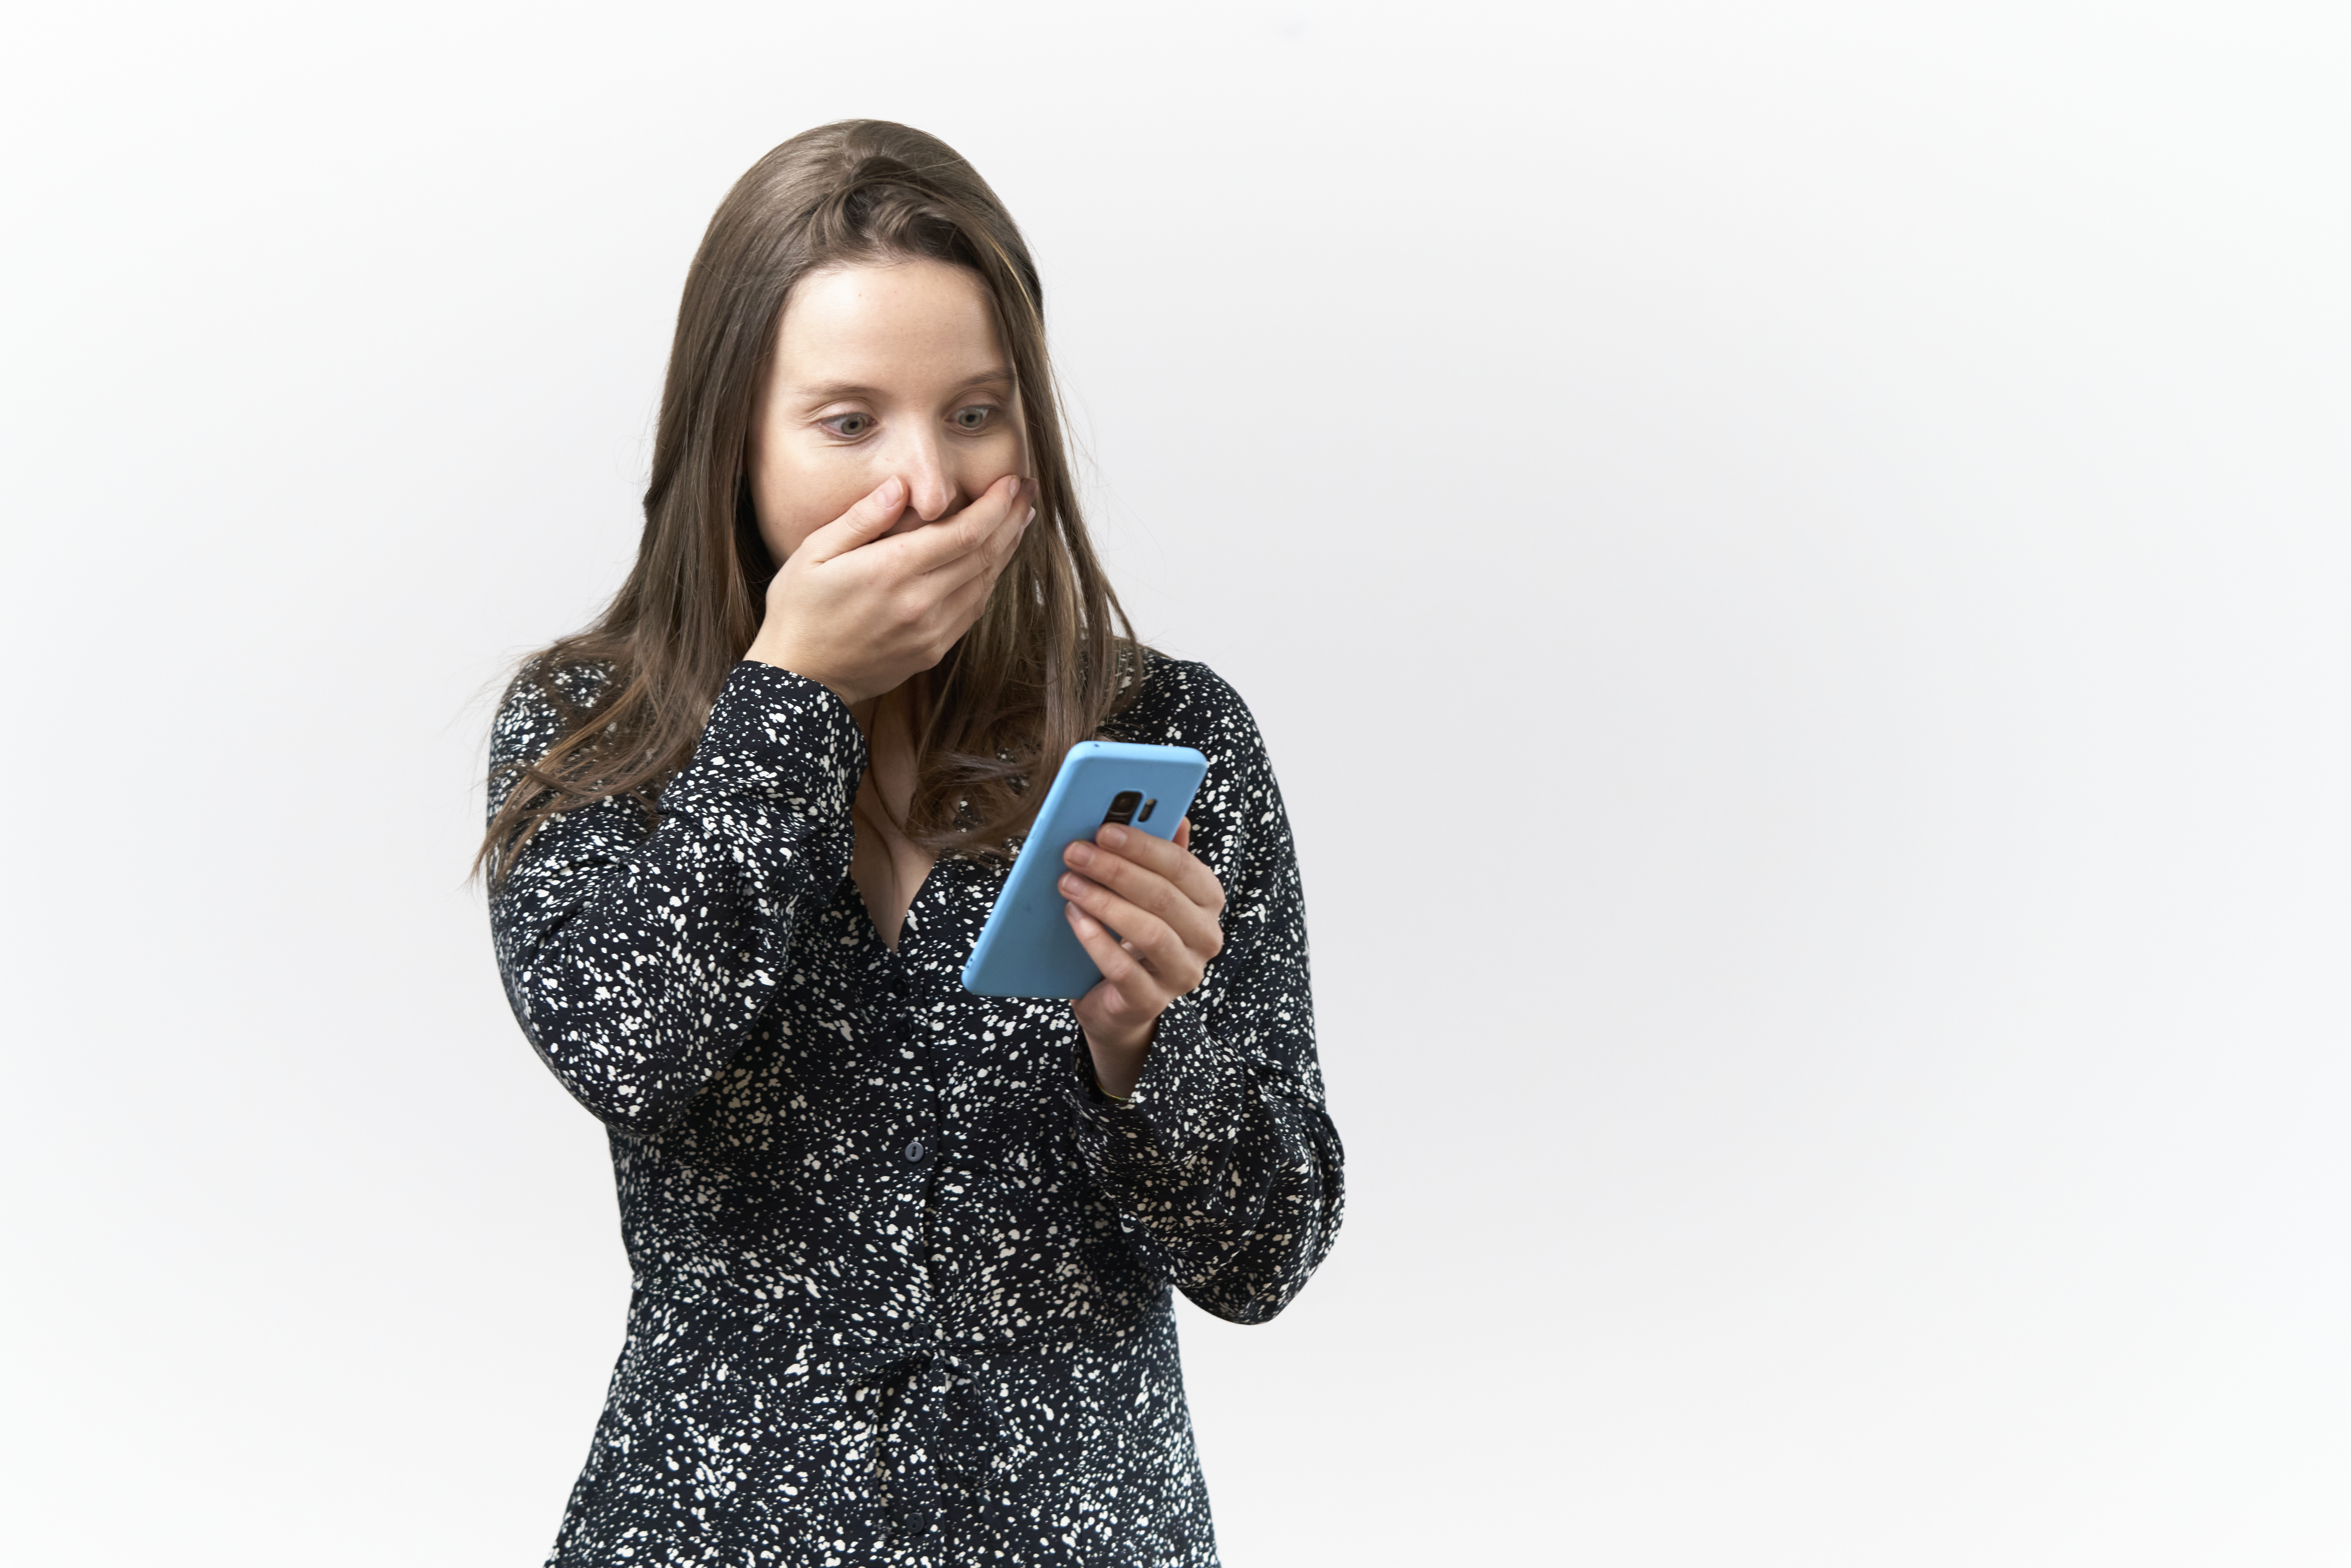 Jeune femme à l'expression surprise lisant des messages sur son téléphone portable sur fond blanc | Source : Getty Images